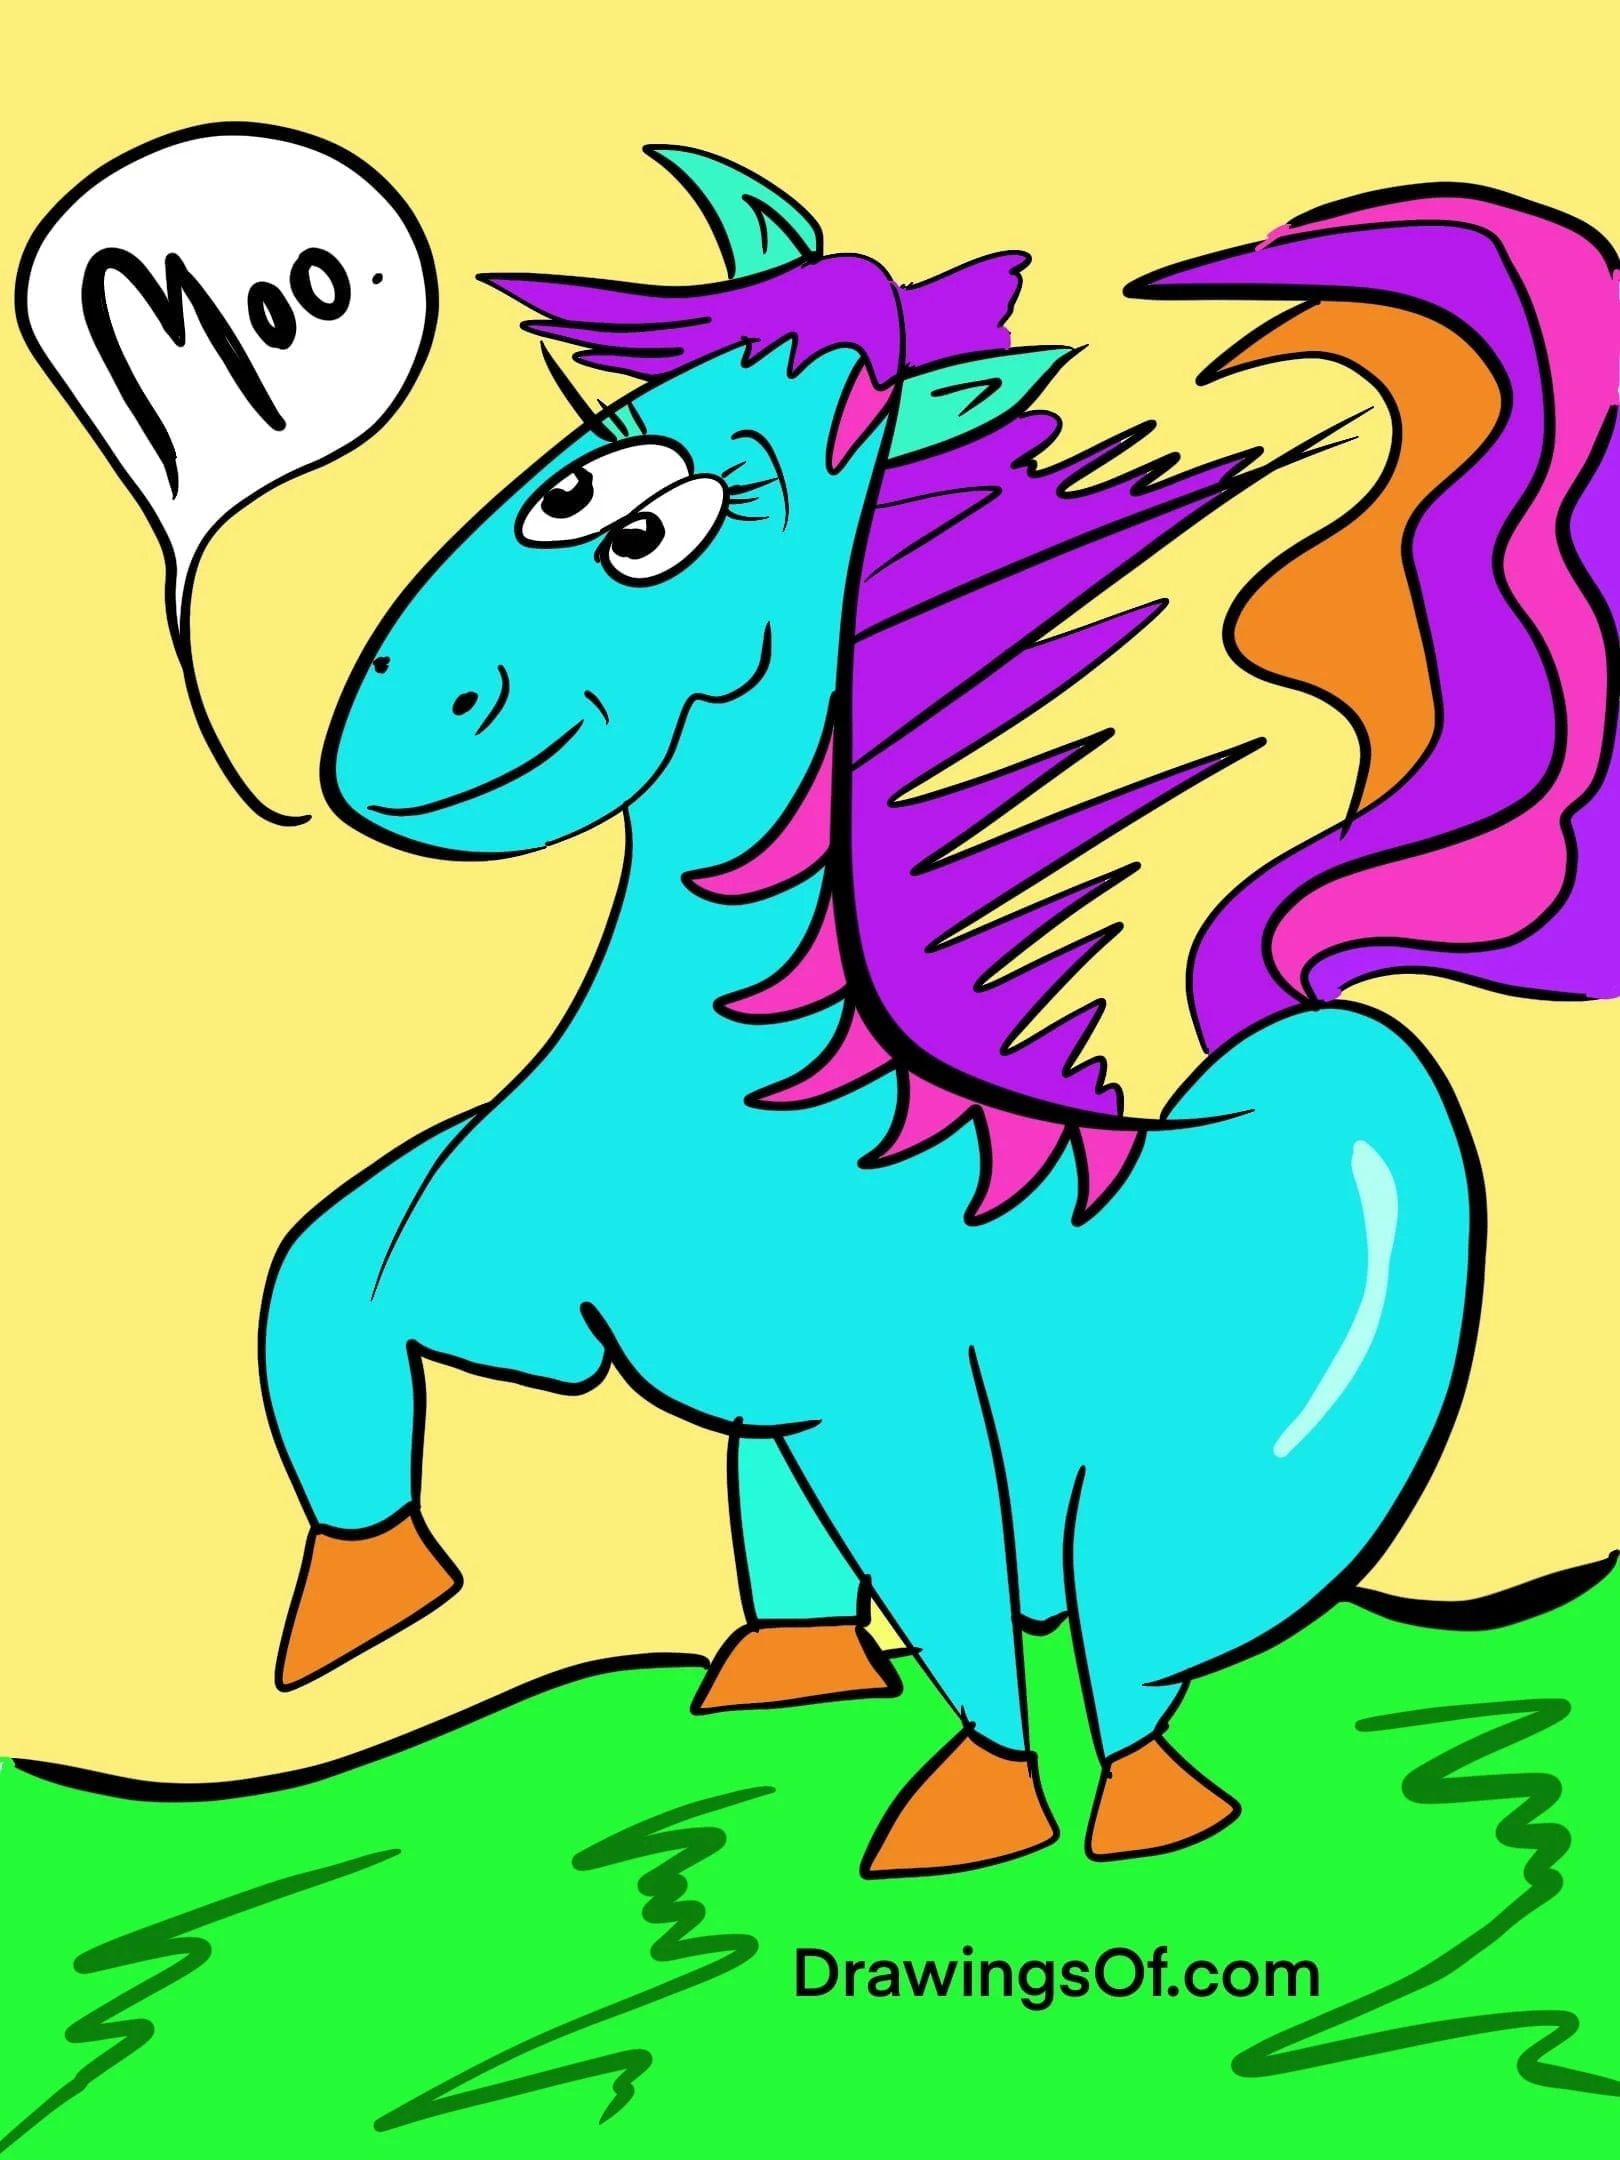 Blue horse saying moo